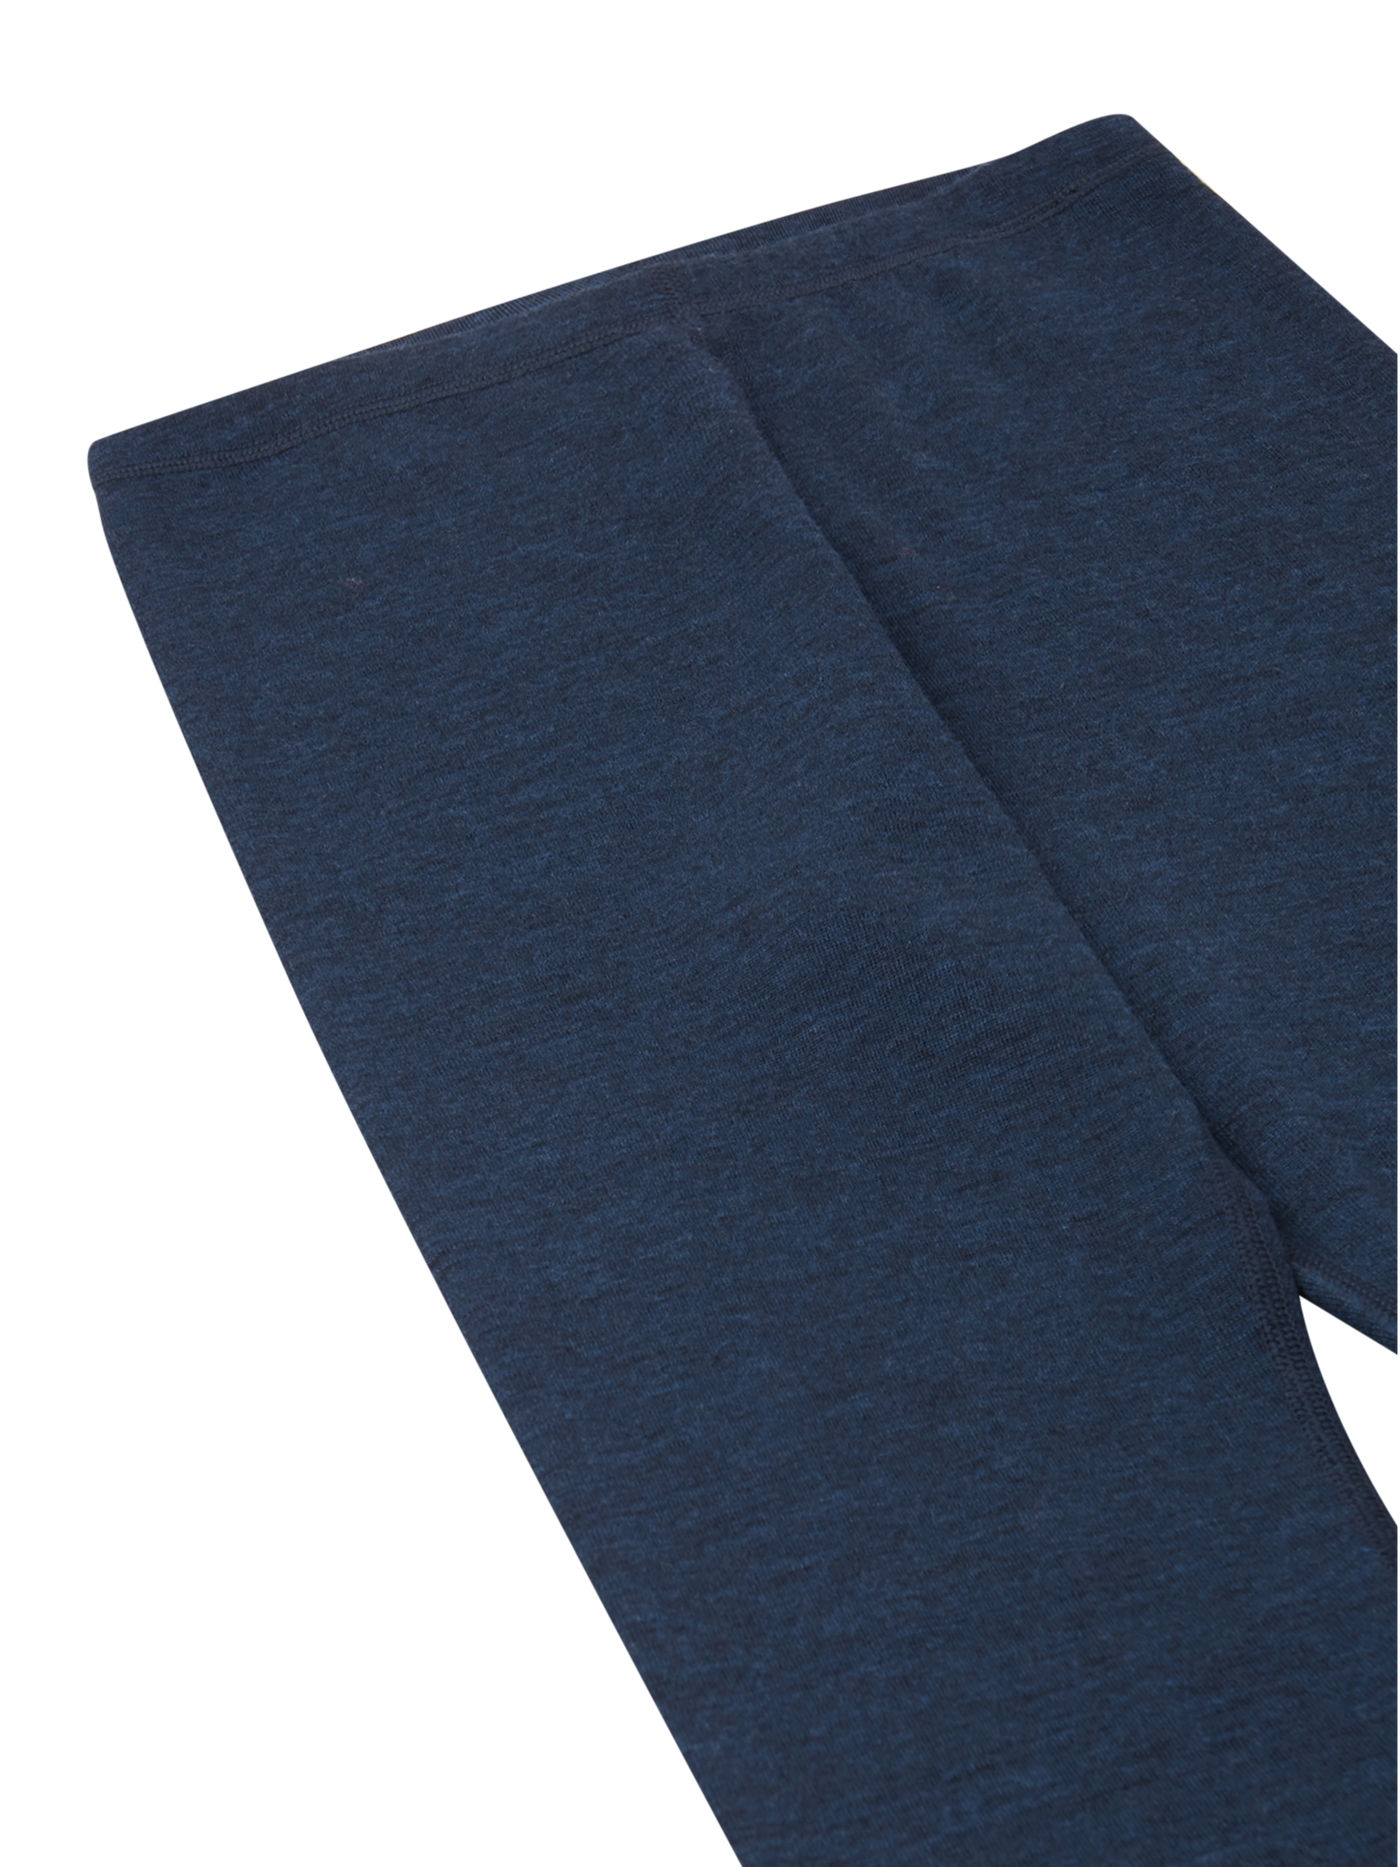 Reiman Thermal Set Kinsei -merinovillasetin tummansiniset housut lähikuvassa